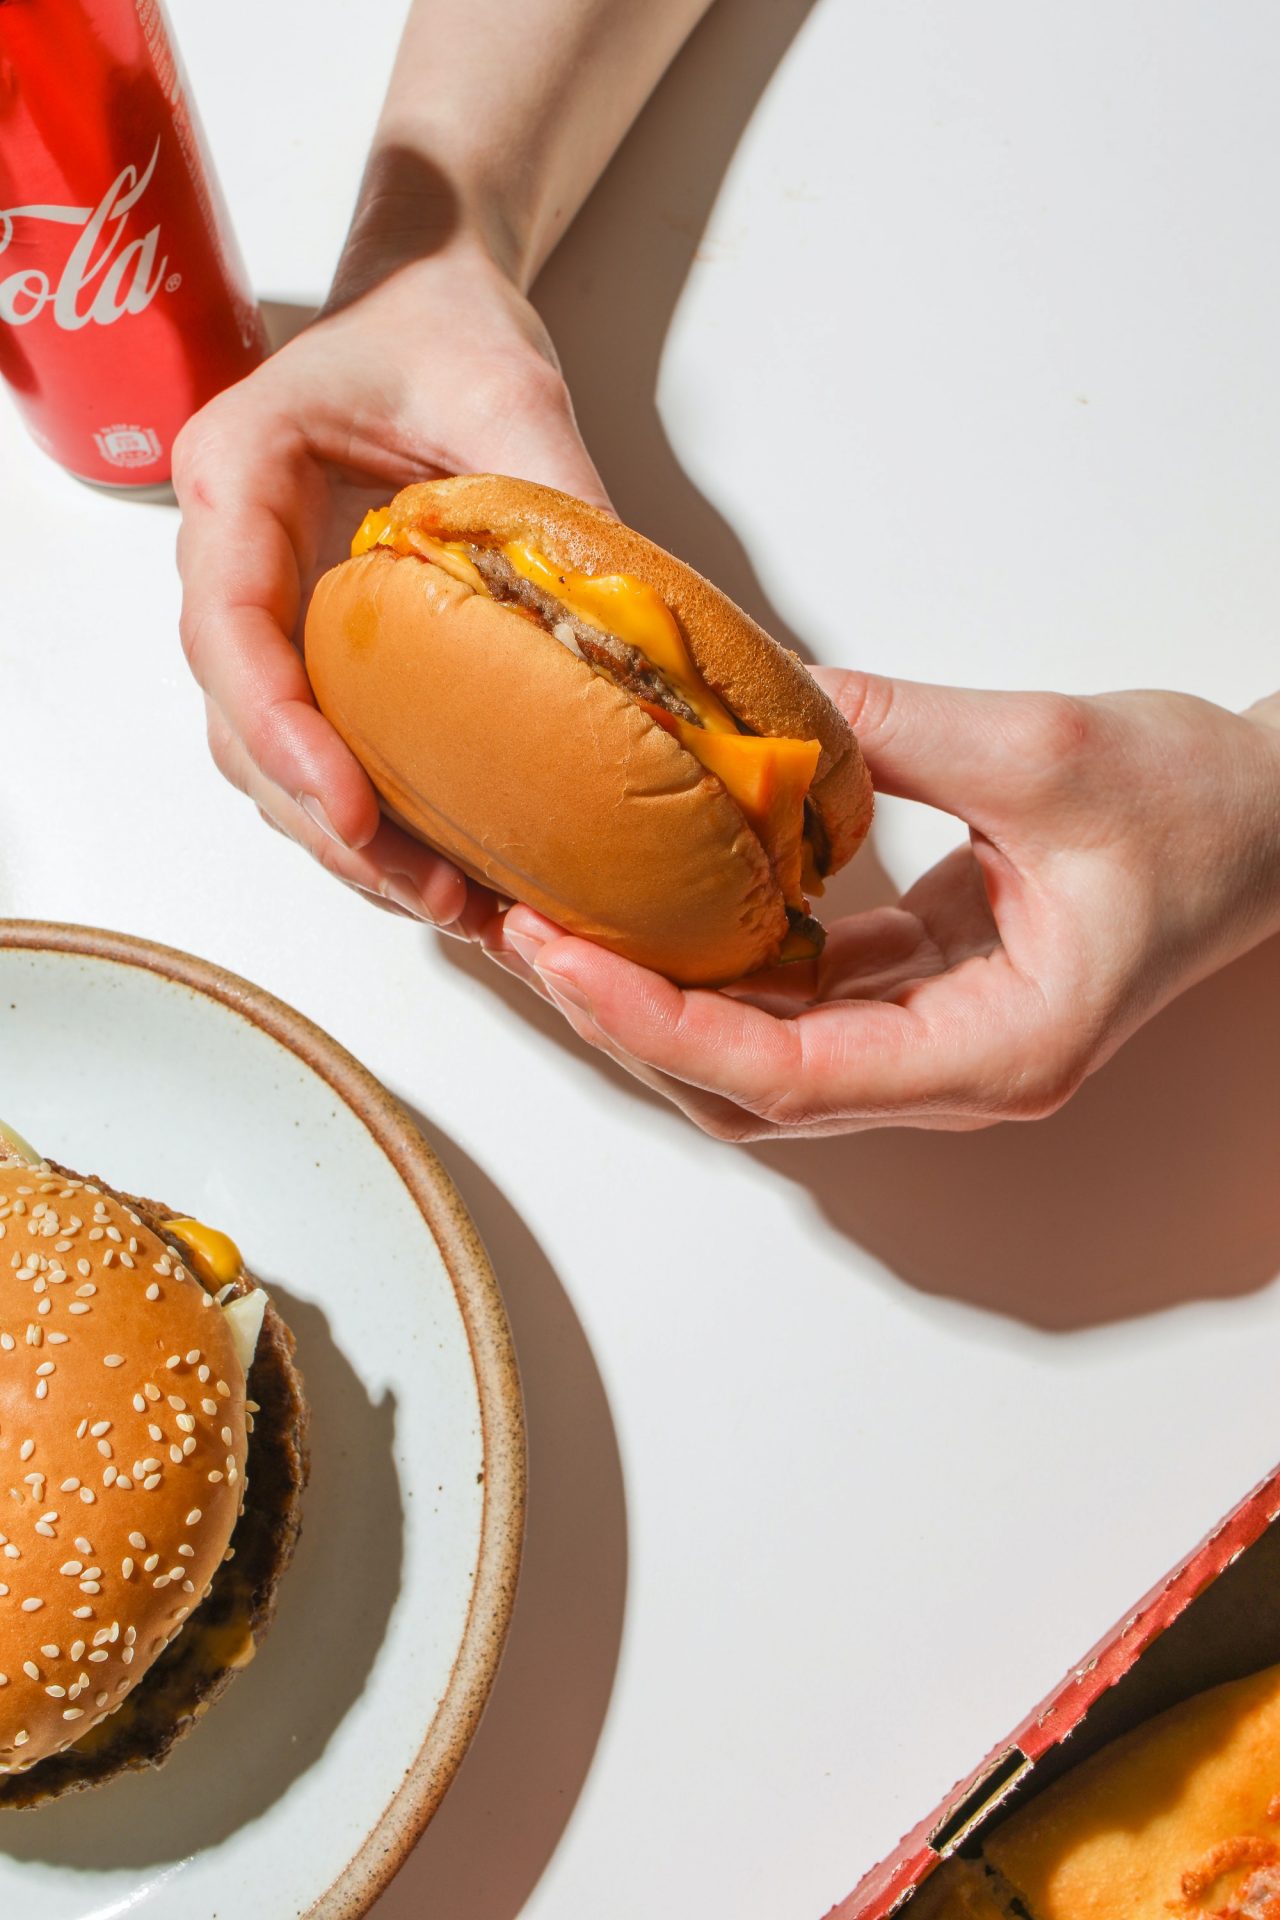 Ein Paar Hände hält einen Burger, aus dem der geschmolzene Käse läuft. In der linken unteren Ecke sieht man etwa die Hälfte eines Tellers mit einem weiteren Hamburger darauf. In der linken oberen Ecke steht eine Getränkedose.